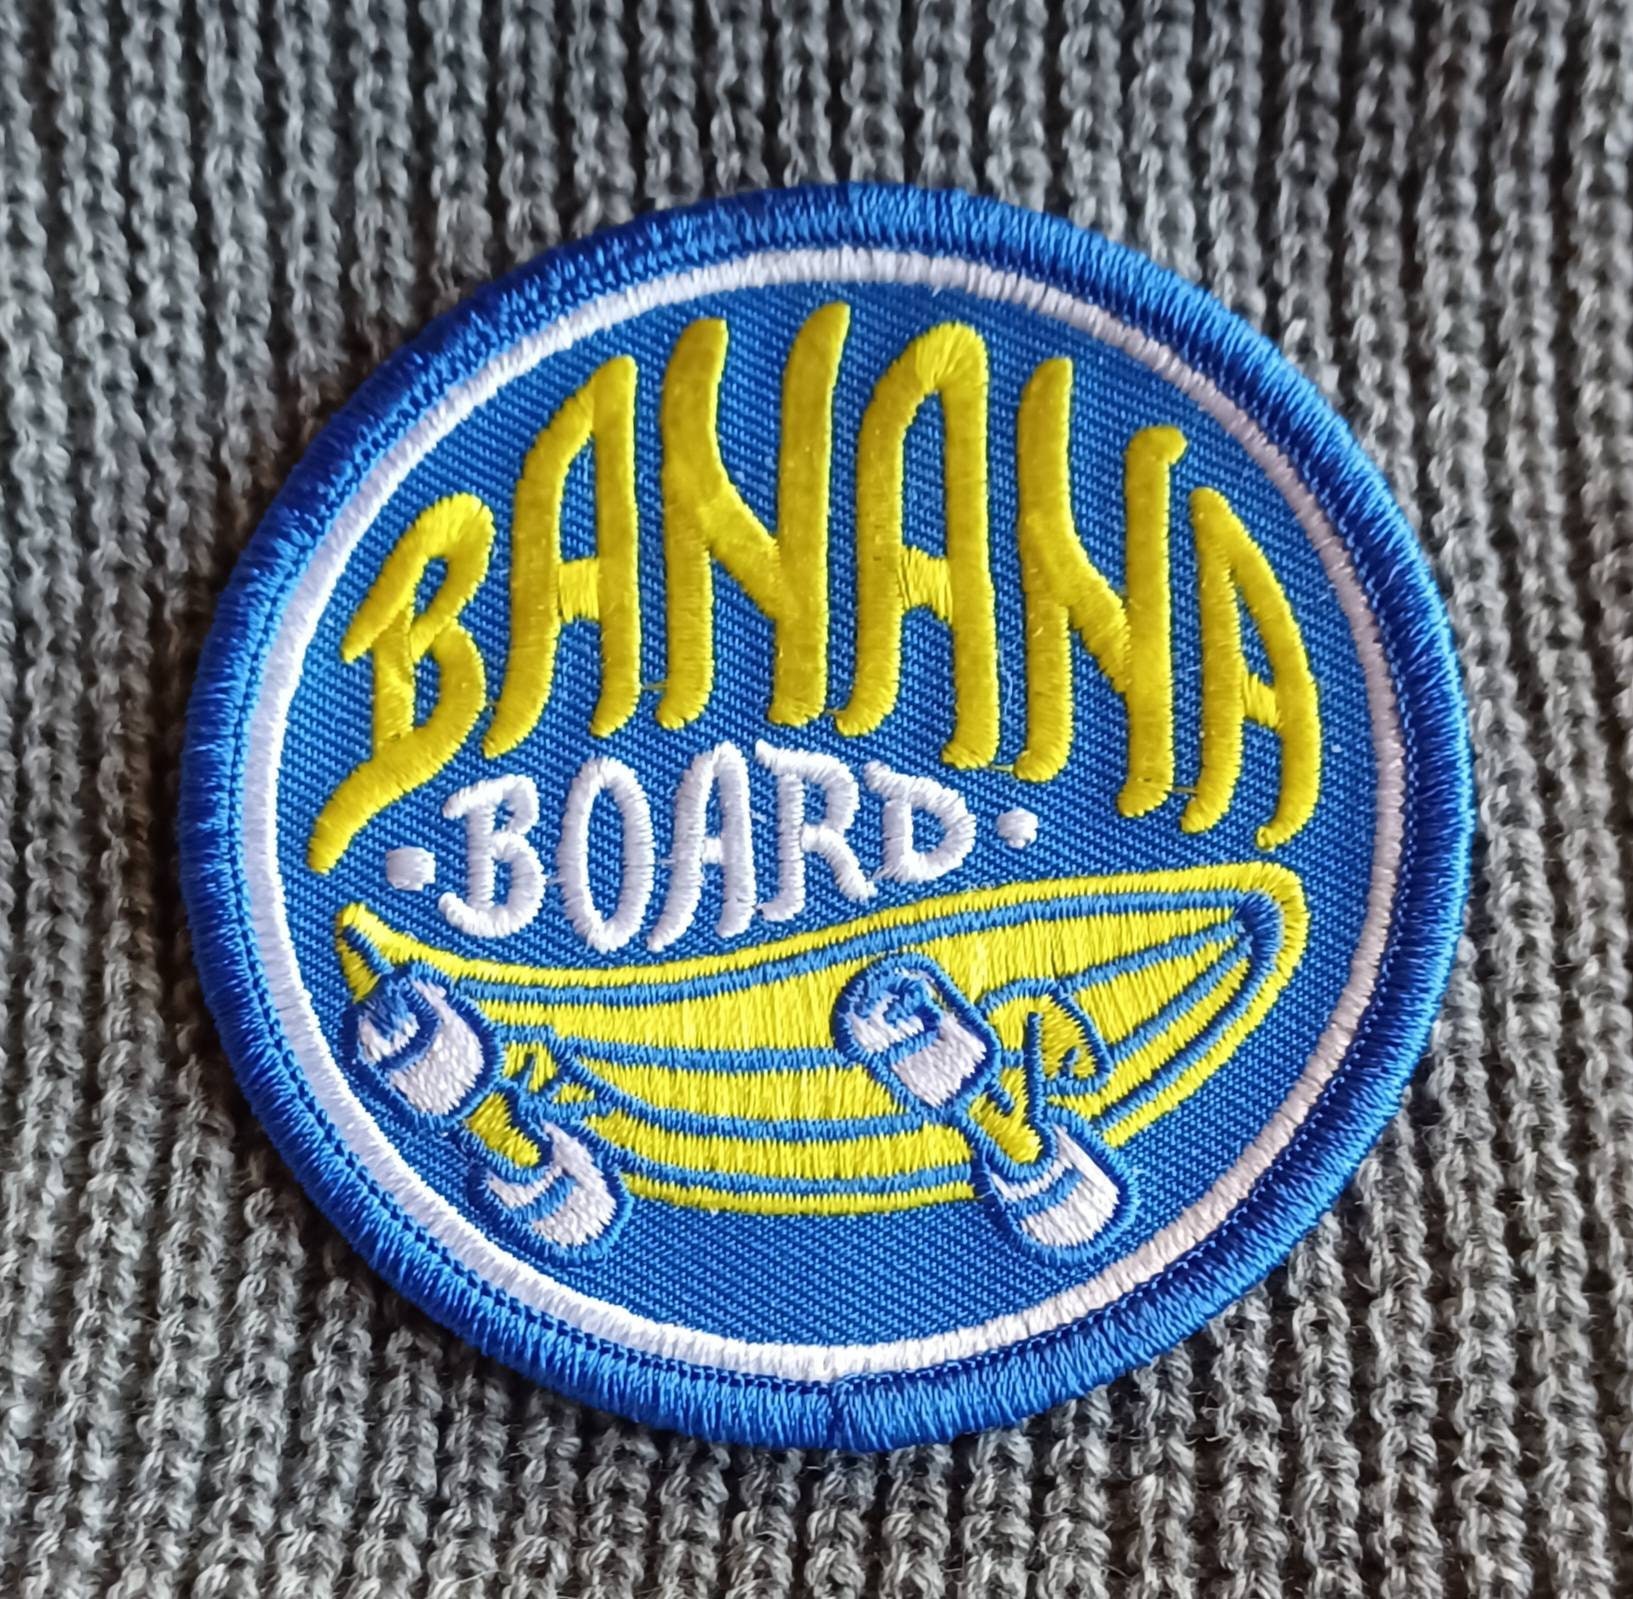 BANANA BOARD GOLD CUP - スケートボード